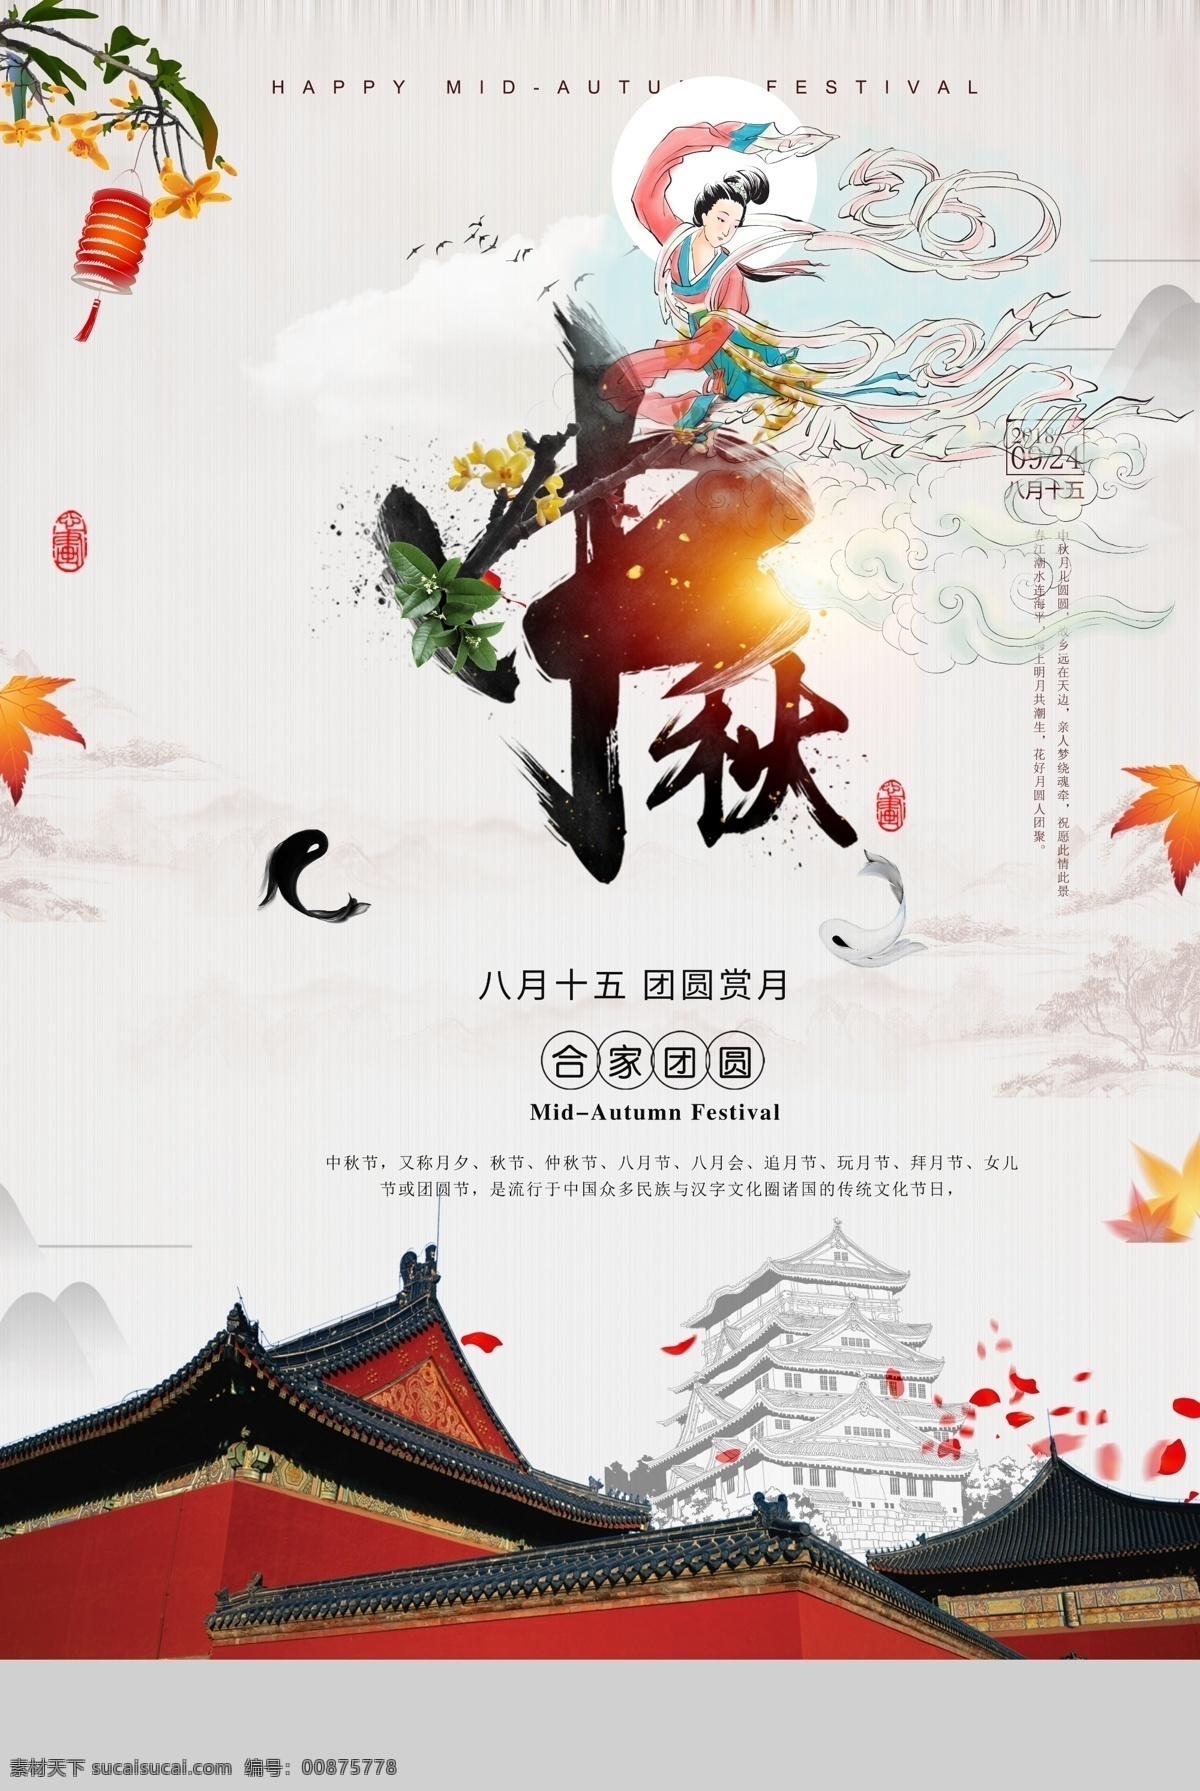 中秋节 复古 古风 传统节日 海报 传统 节日 传统节日海报